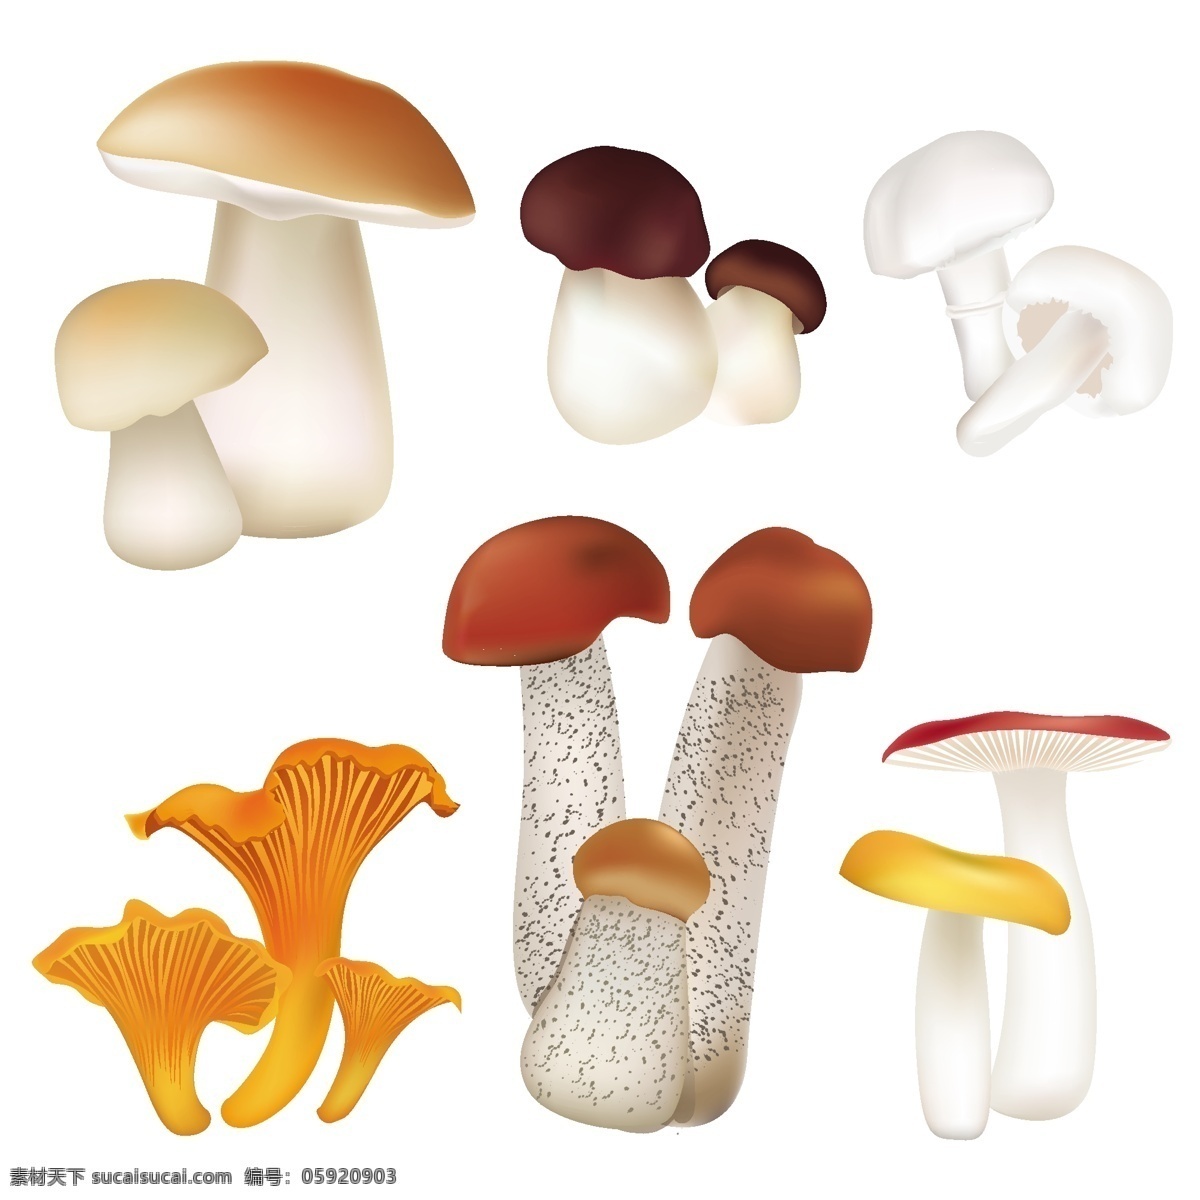 矢量 蘑菇 模板下载 菌类生物 食物 蔬菜水果 生物世界 餐饮美食 生活百科 矢量素材 白色